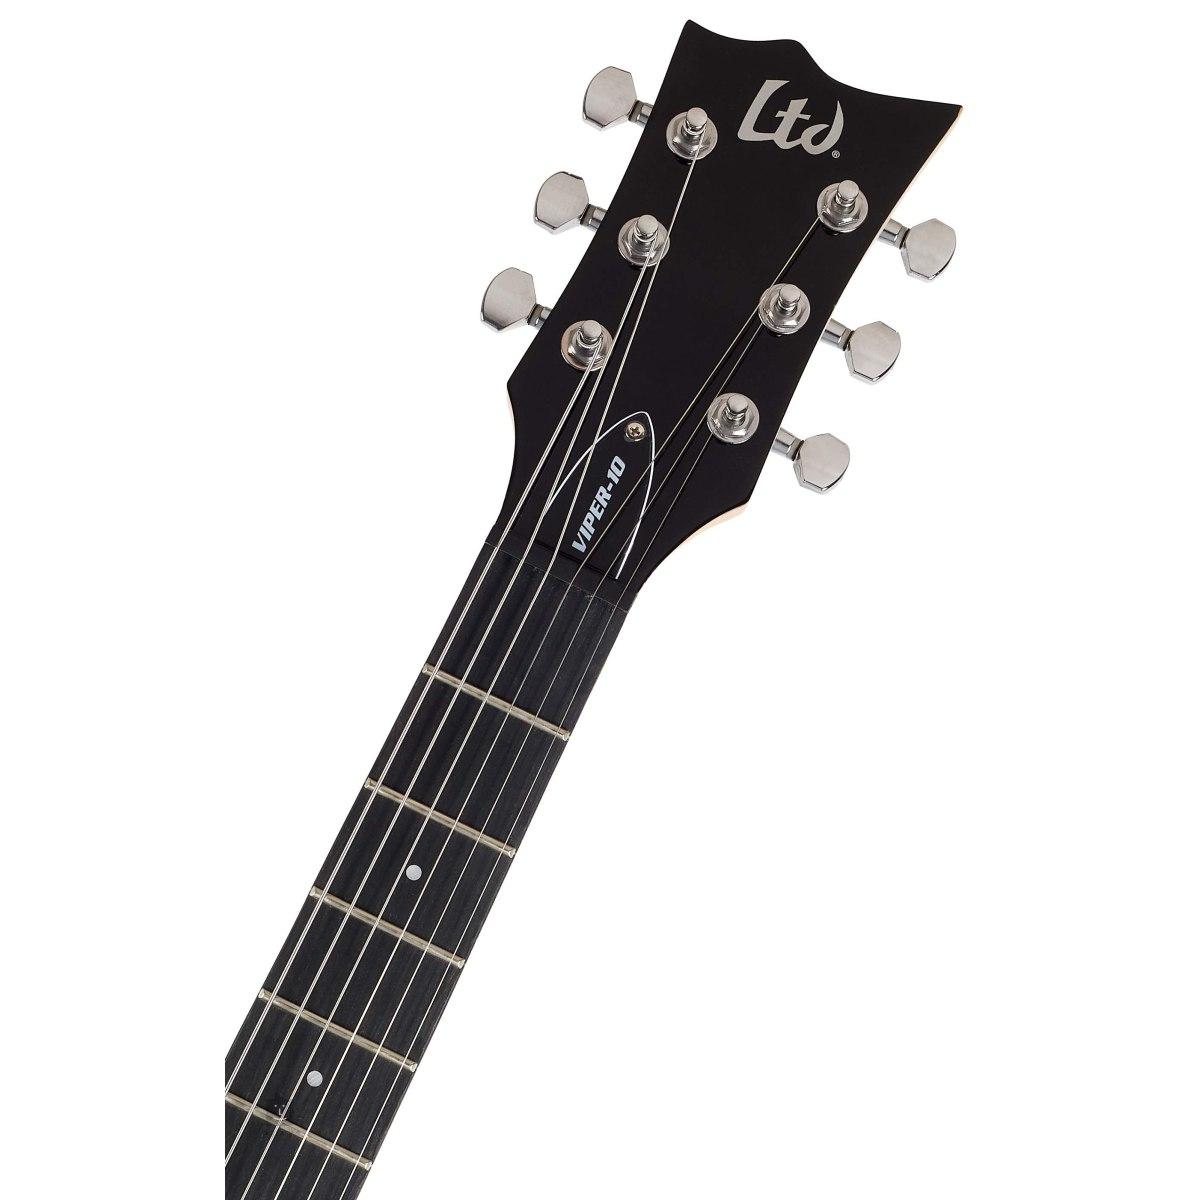 Esp Ltd Viper-10 chitarra elettrica  con borsa